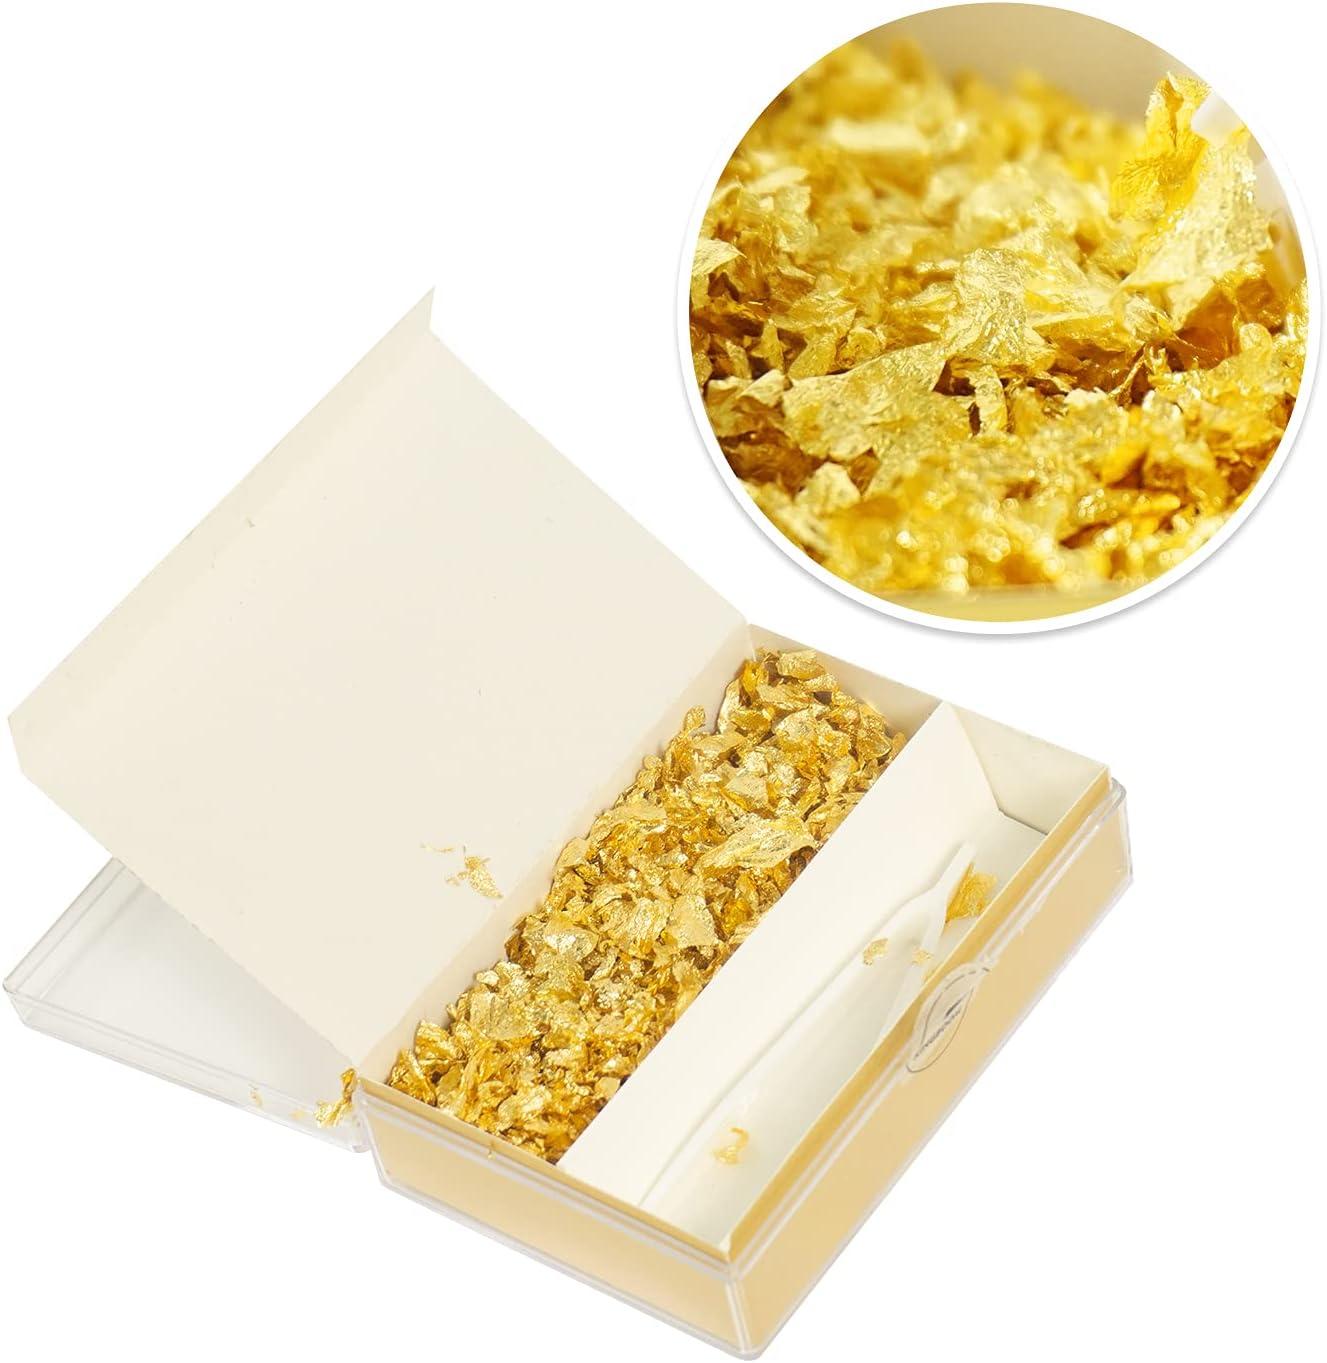 Goldz 24 Karat Edible Gold flakes 30ml (NEW)